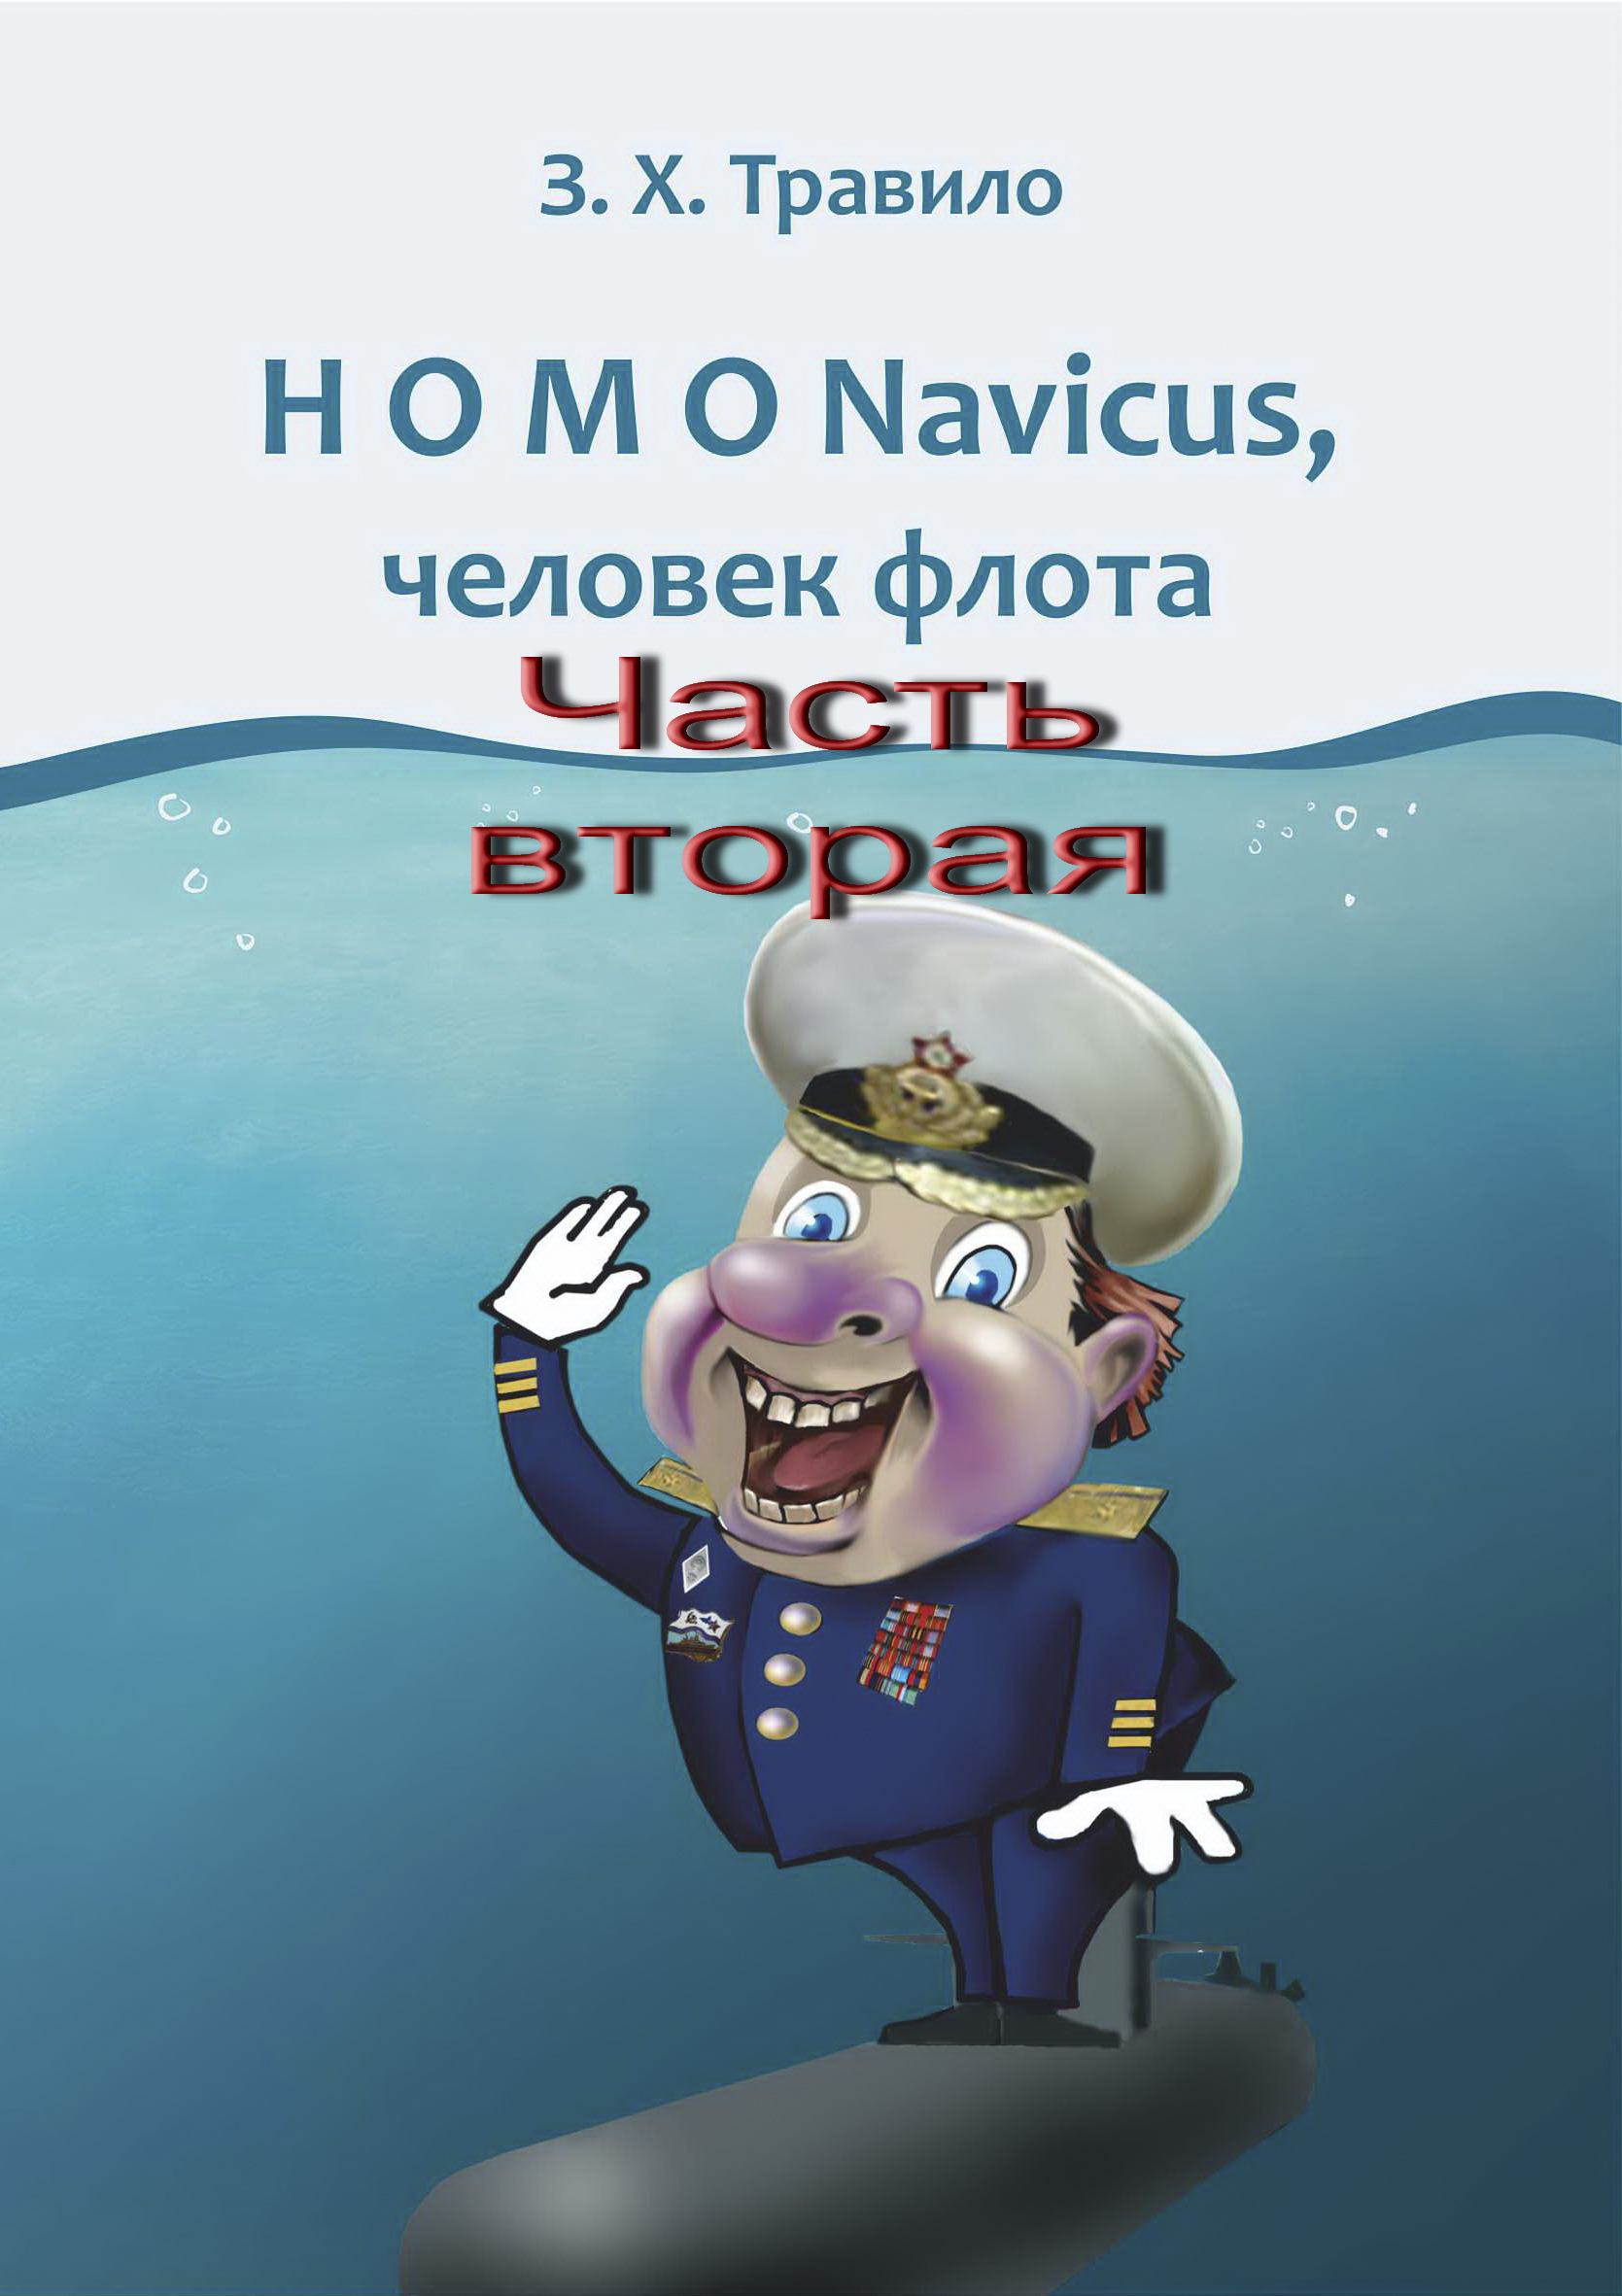 HOMO Navicus,человек флота. Часть вторая